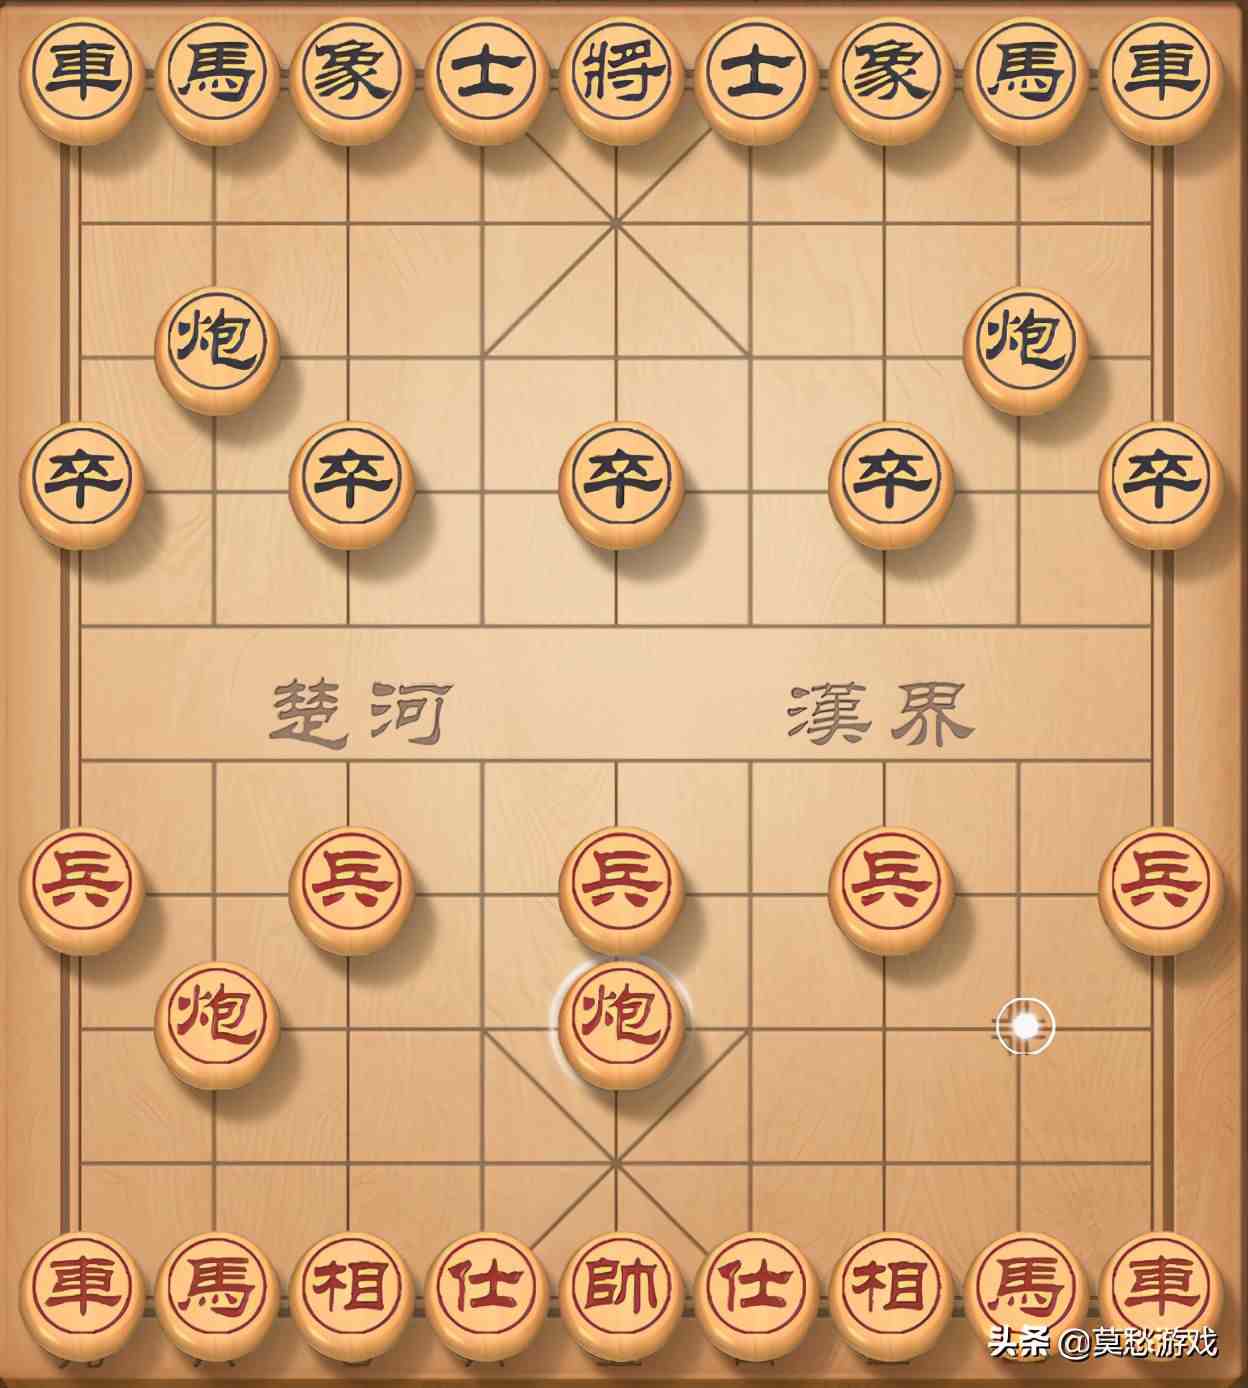 中国象棋教程|象棋入门初学者的必学的基本走法